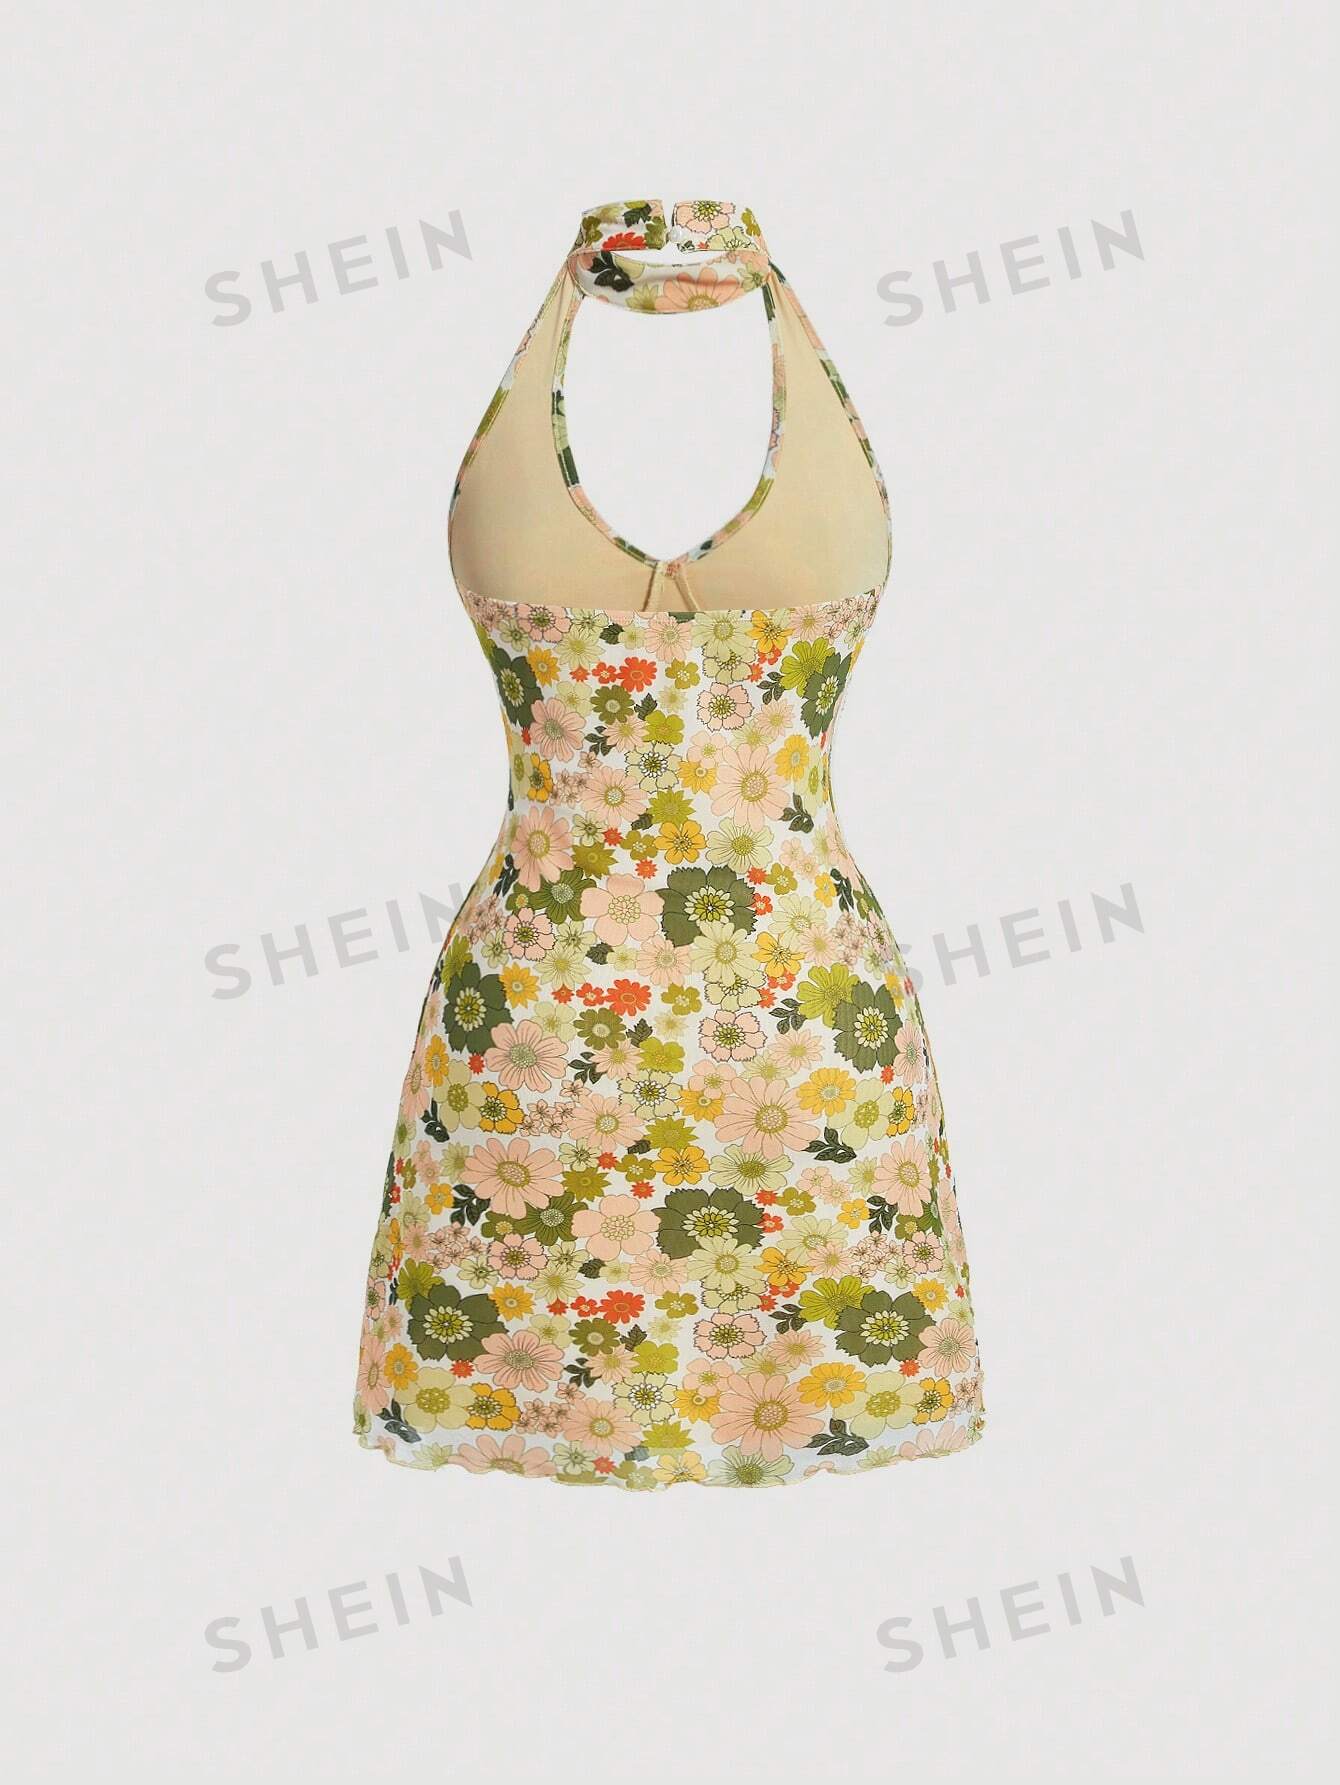 SHEIN MOD вязаное женское платье с воротником на шее с цветочным принтом, зеленый